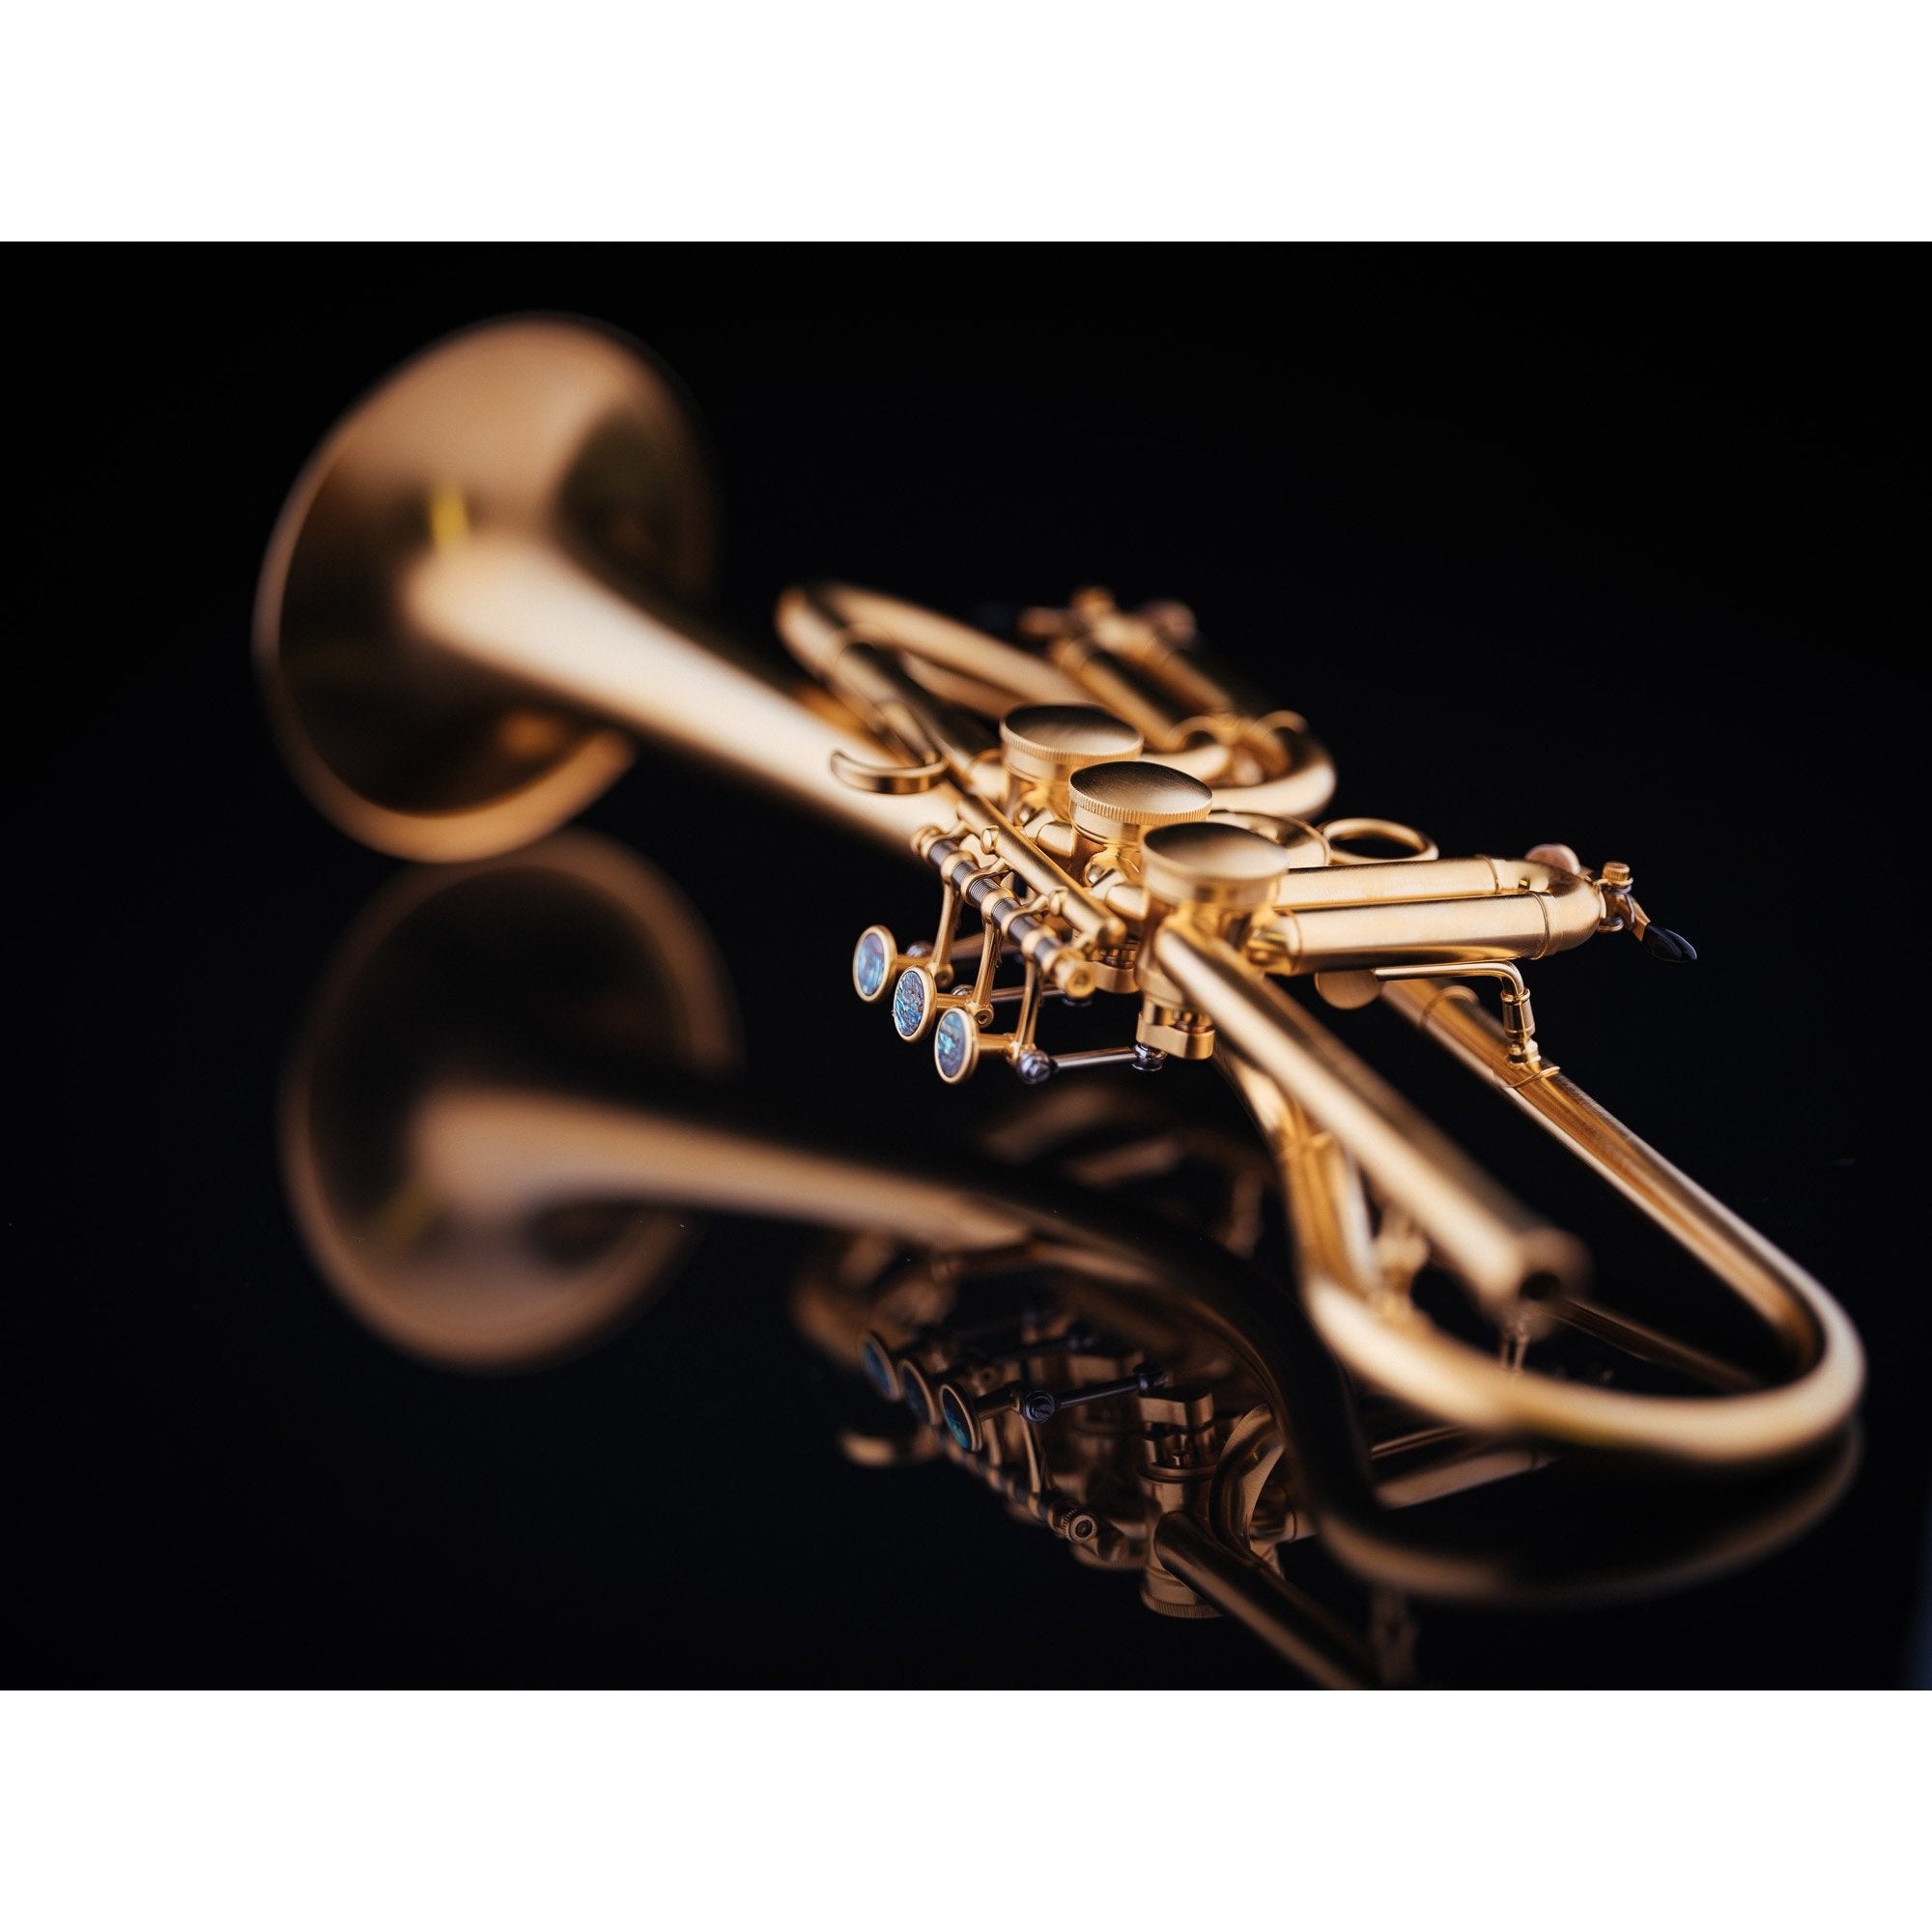 Trompete. Musical Instrument. golden Horn mit Flagge. Klang und